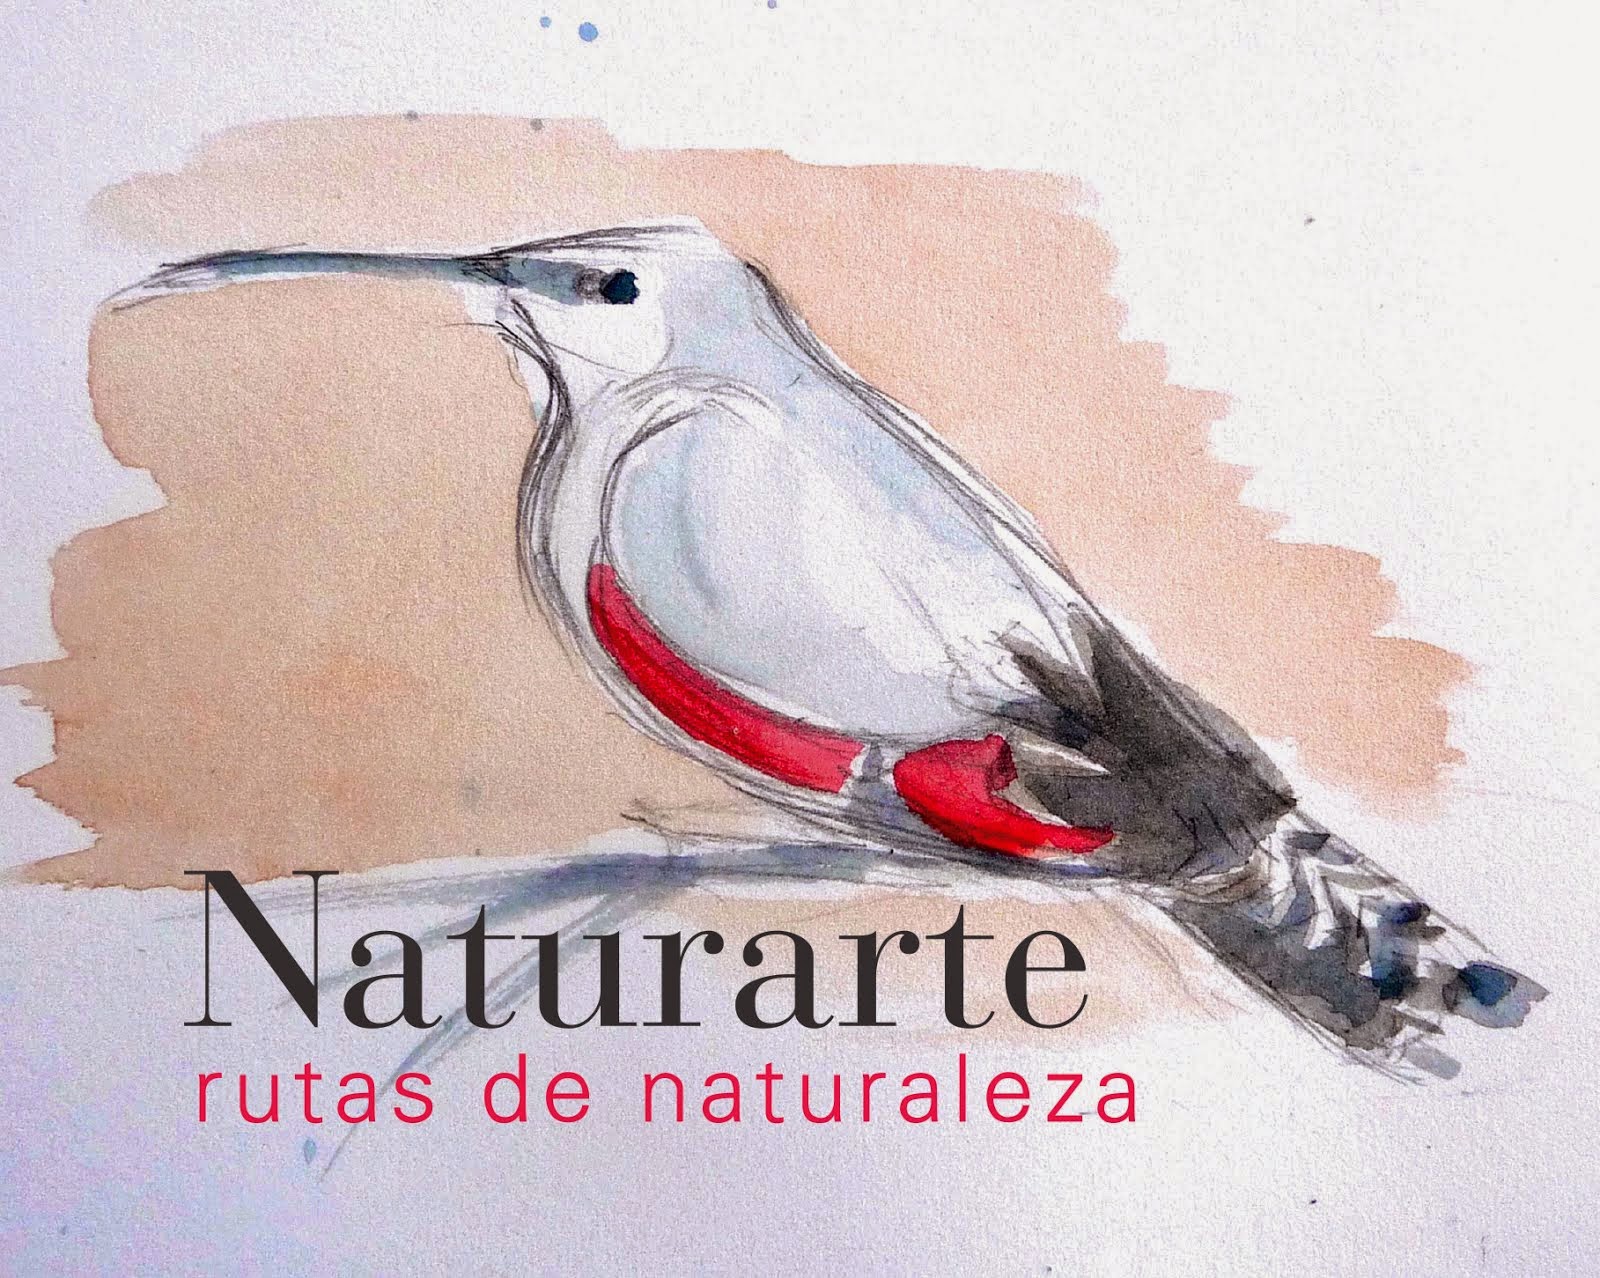 NaturArte